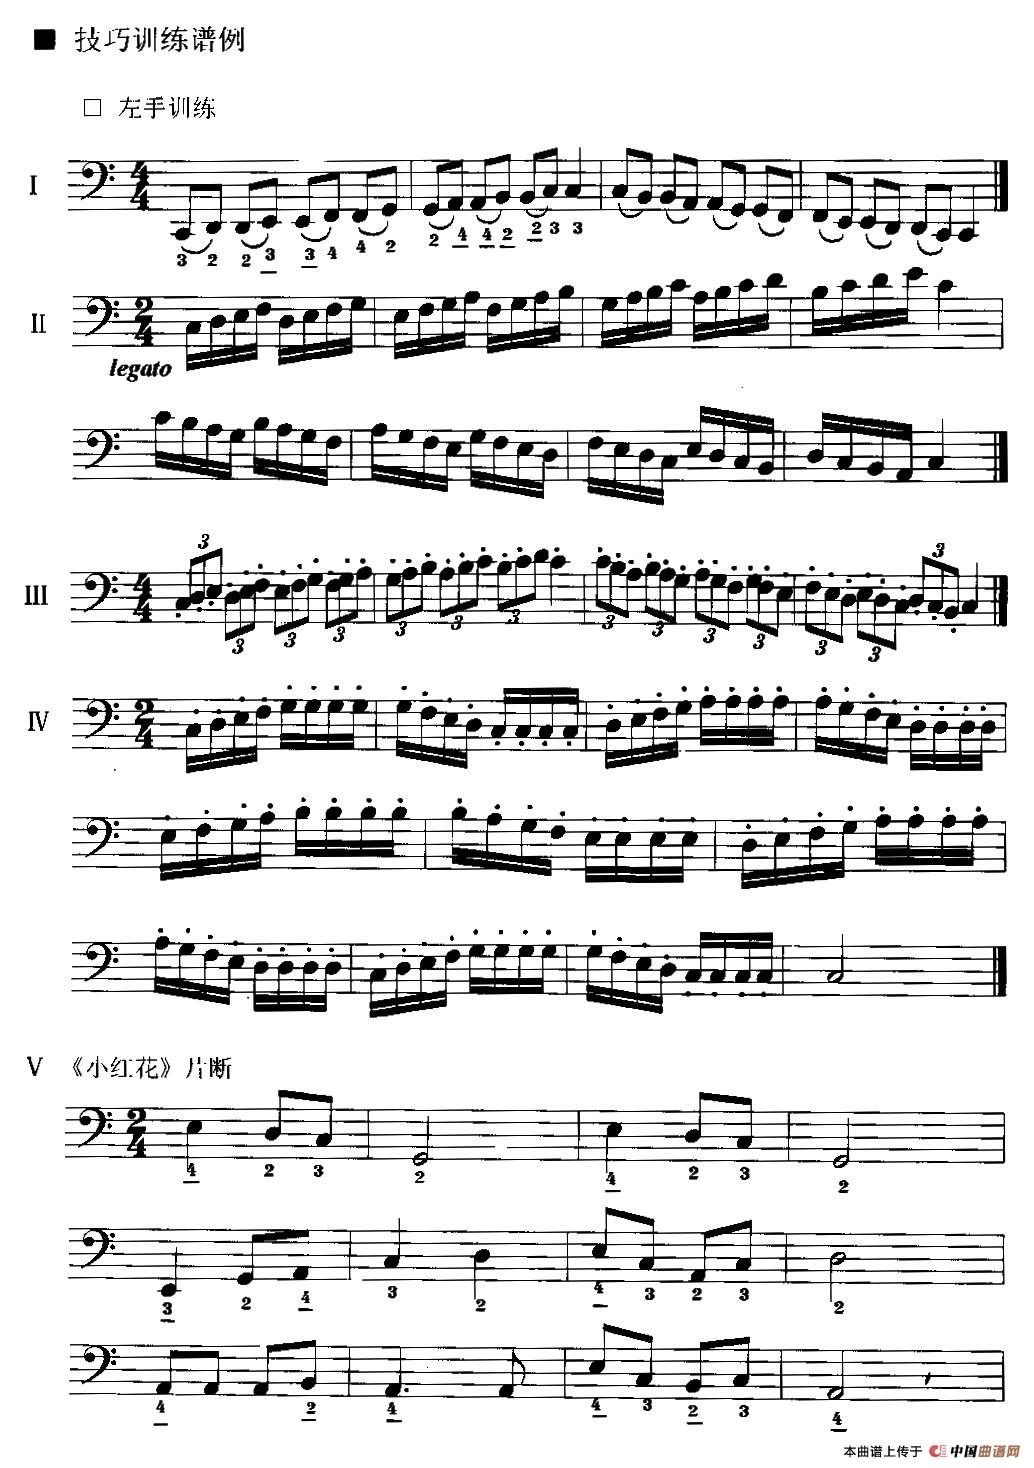 手风琴左手演奏技巧基本练习谱